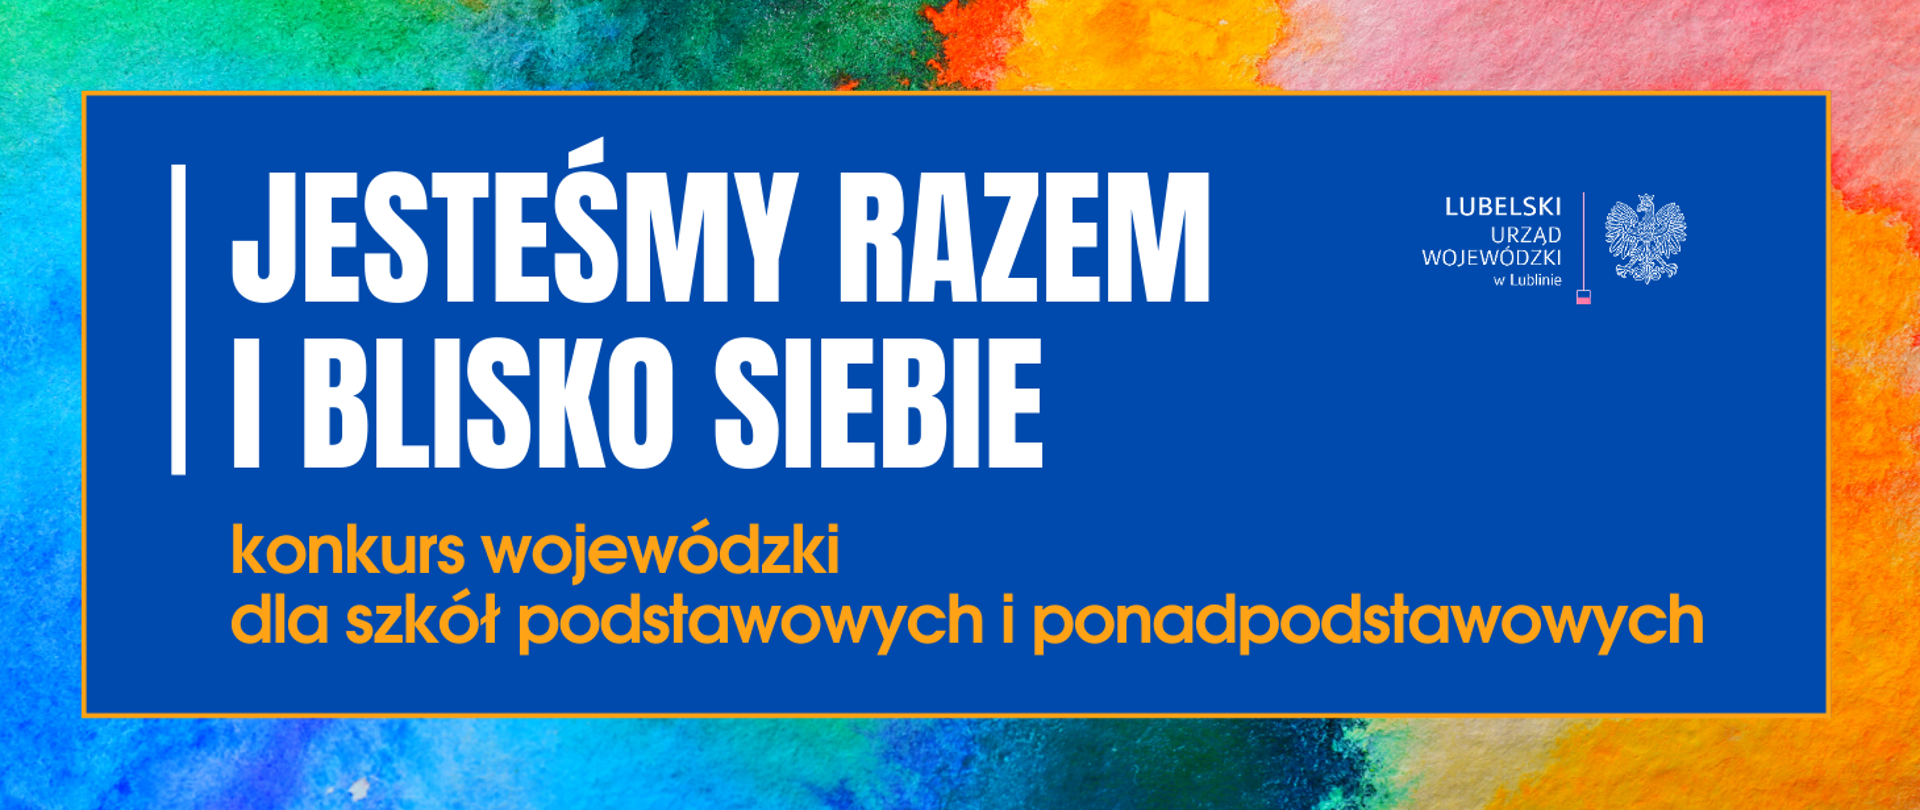 Grafika z napisem Wojewódzki konkurs "Jesteśmy razem i blisko siebie"